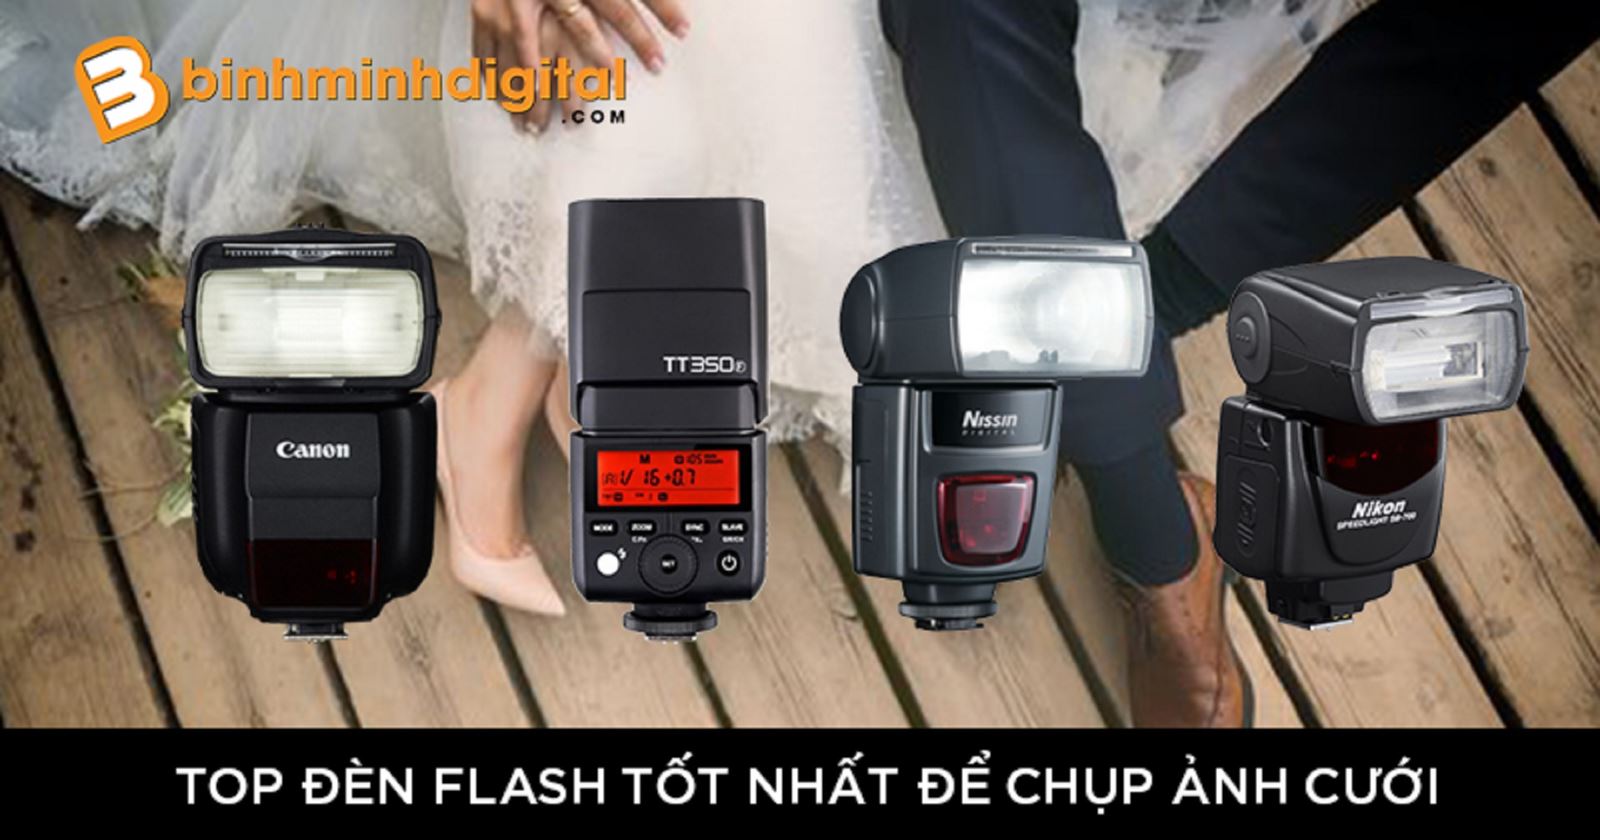 Top đèn Flash tốt nhất để chụp ảnh cưới